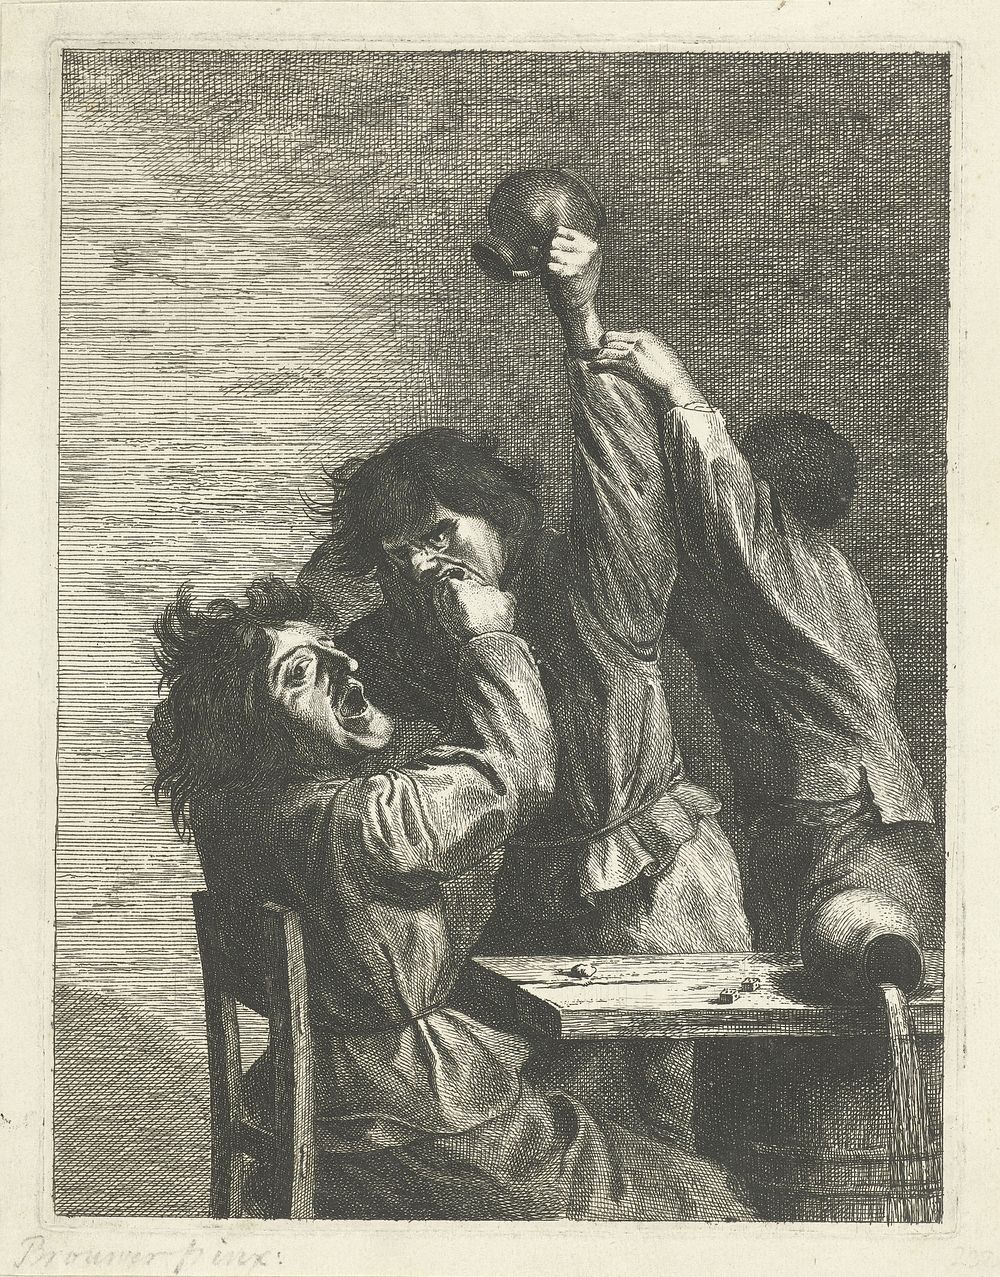 Herberginterieur met vechtende boeren (1679 - 1728) by Johannes Gronsveld and Adriaen Brouwer